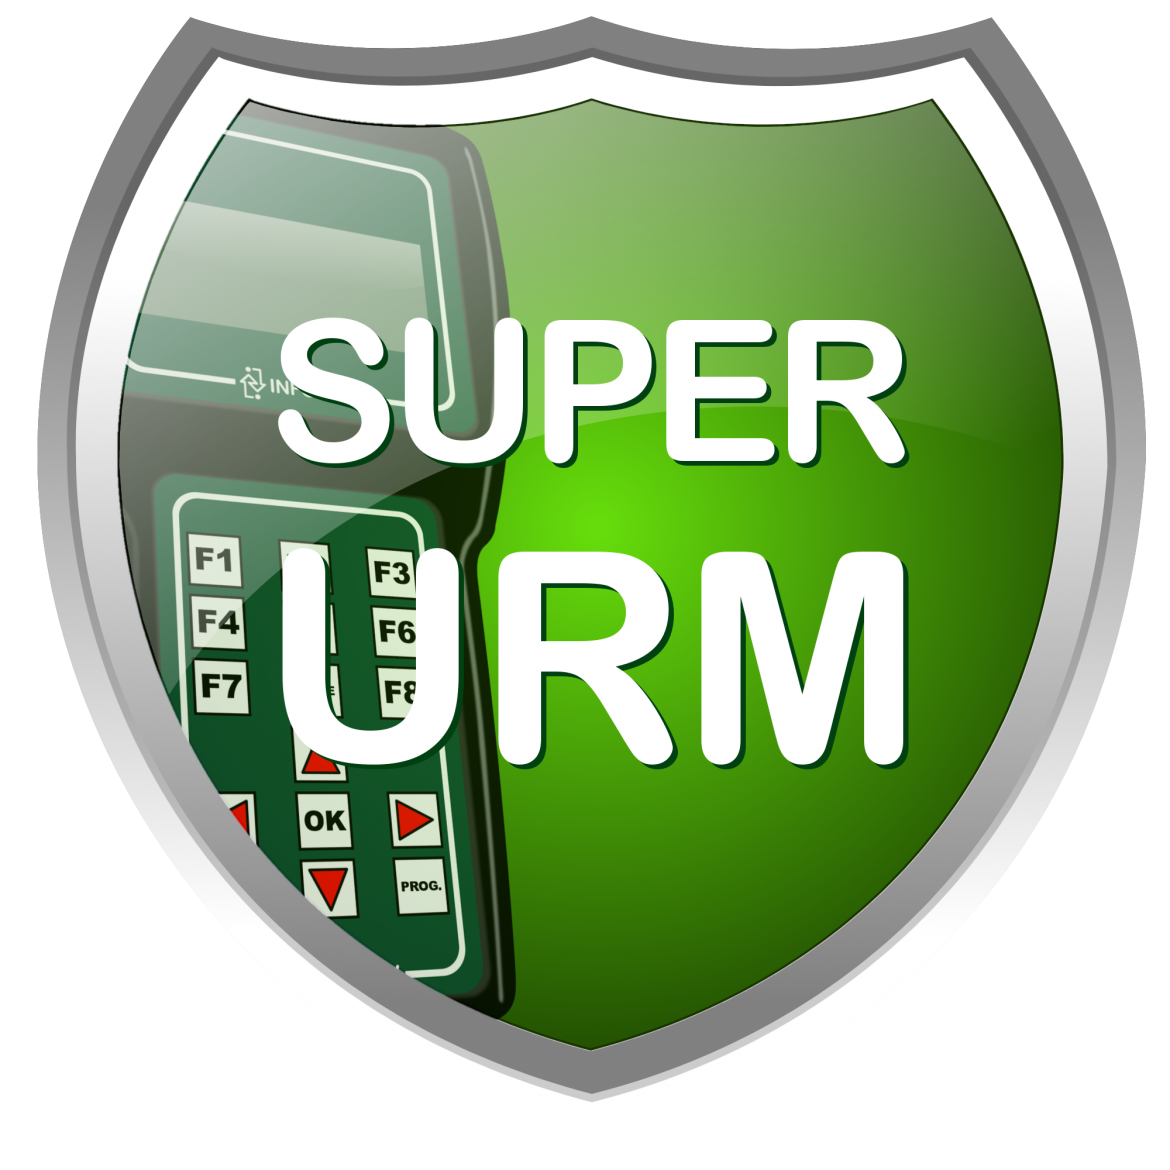 [Software - Super URM]